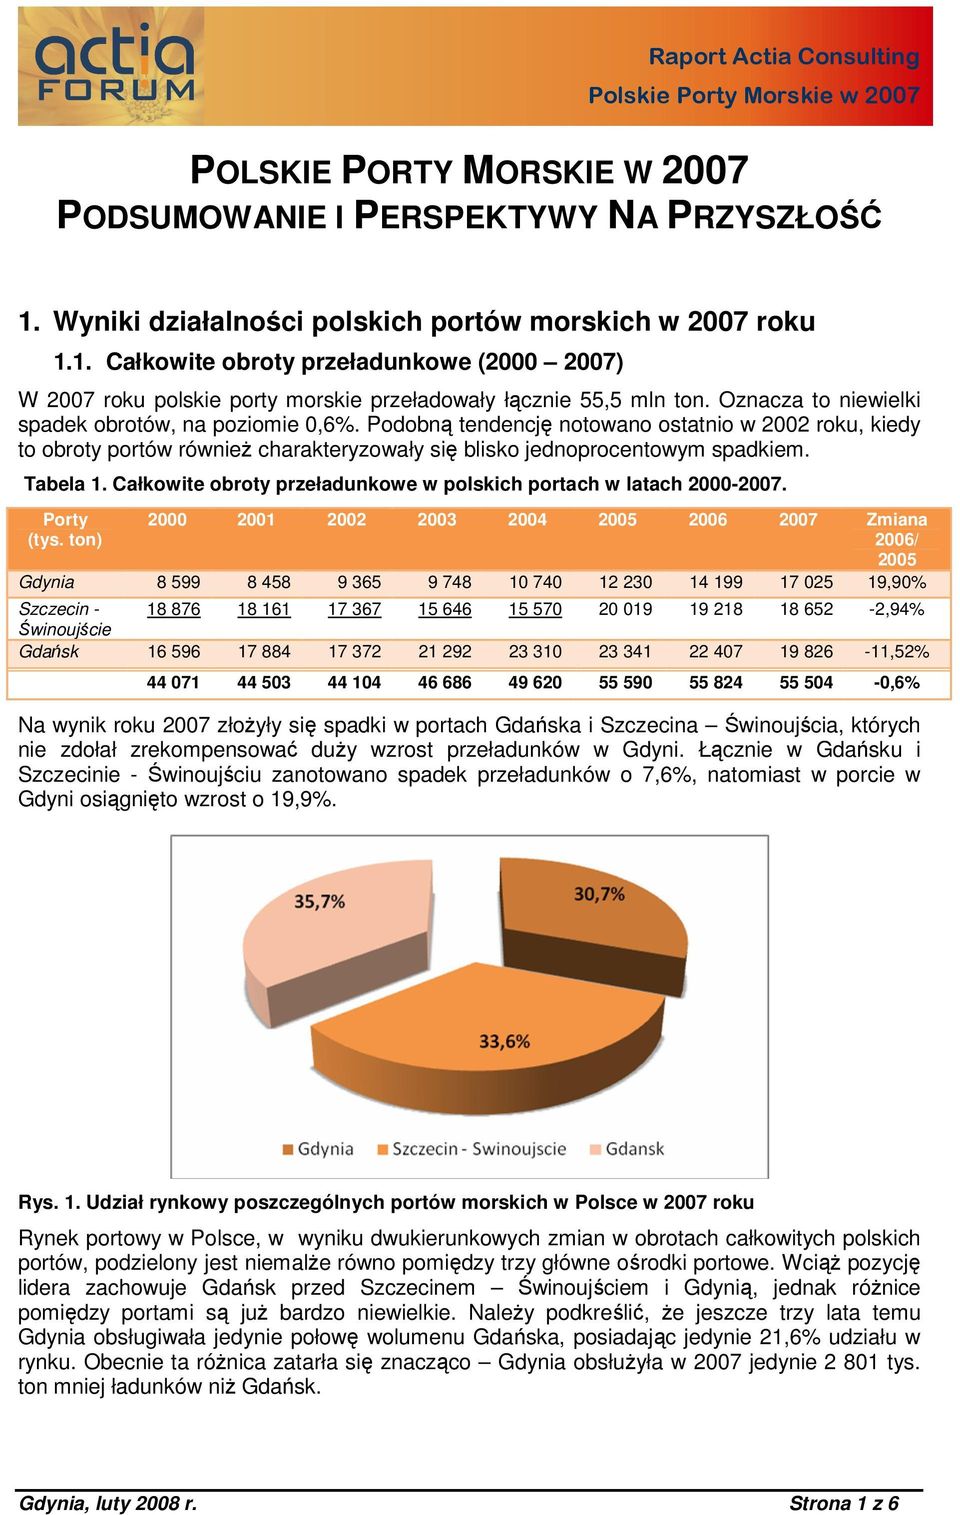 Całkowite obroty przeładunkowe w polskich portach w latach 2000-2007. Porty (tys.